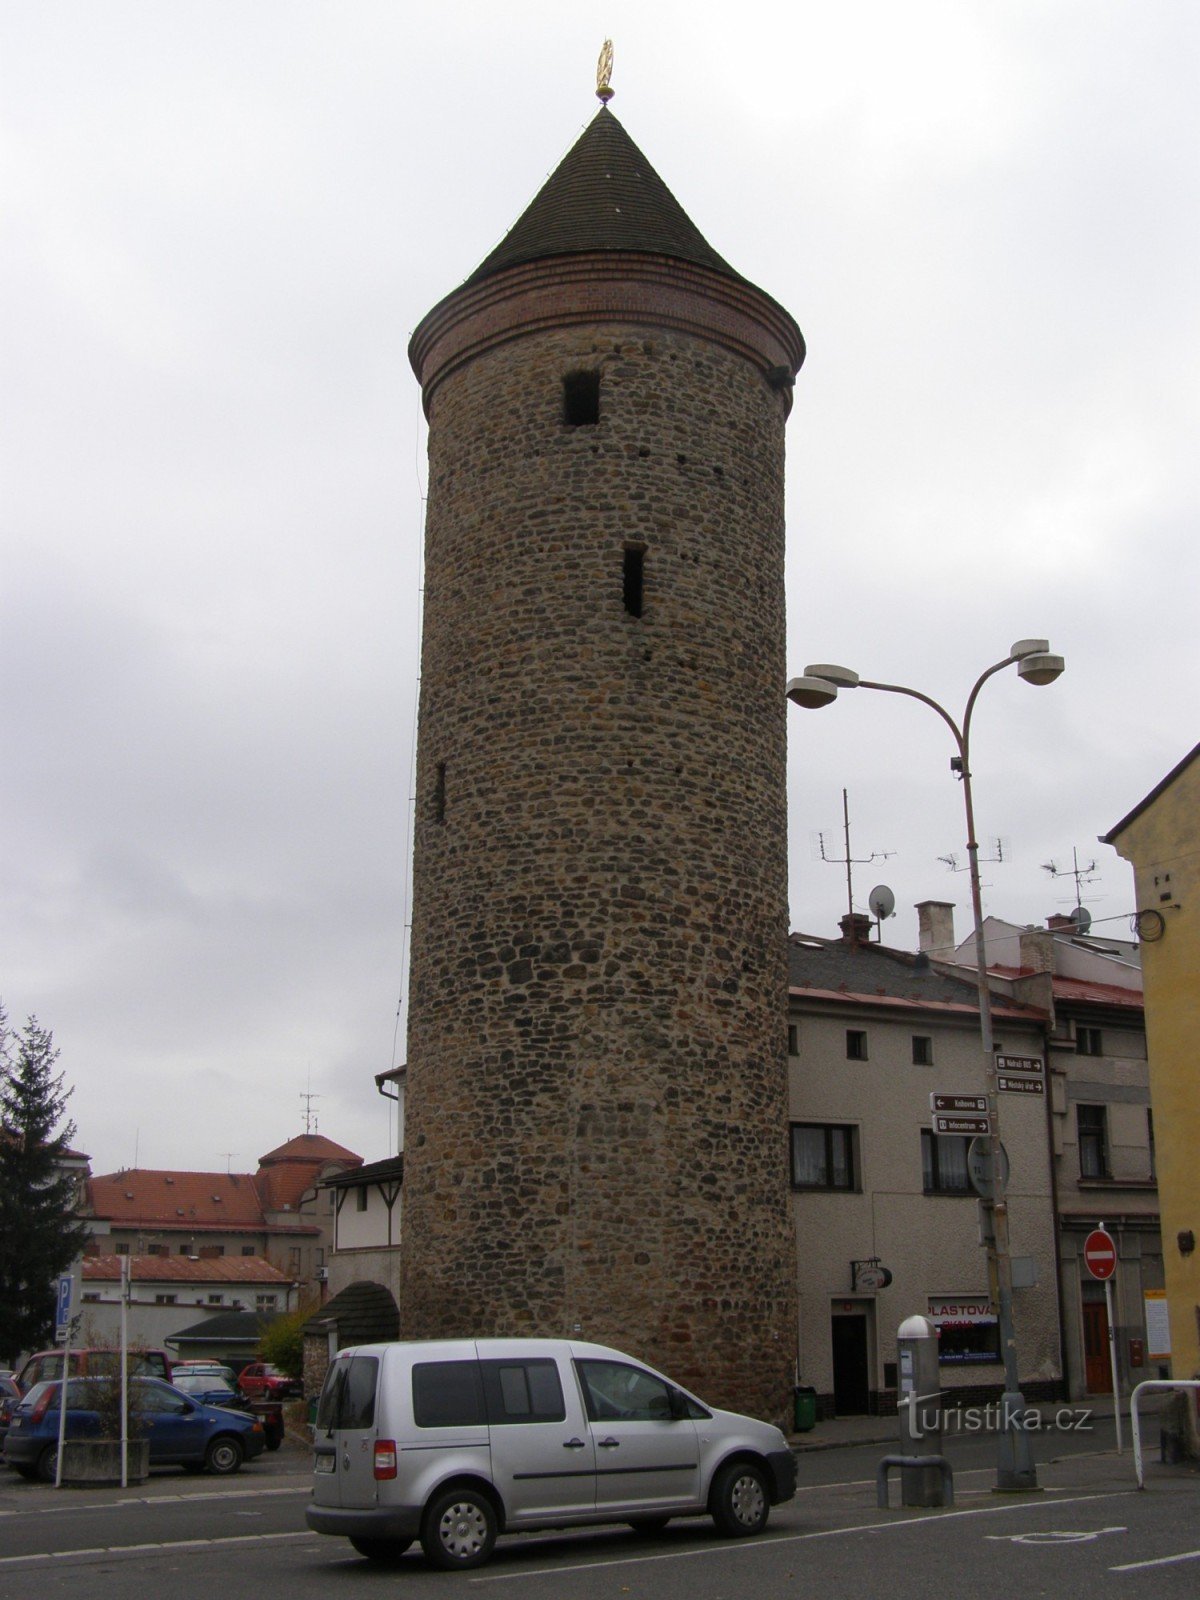 Двор Кралове - Шинделаржская башня